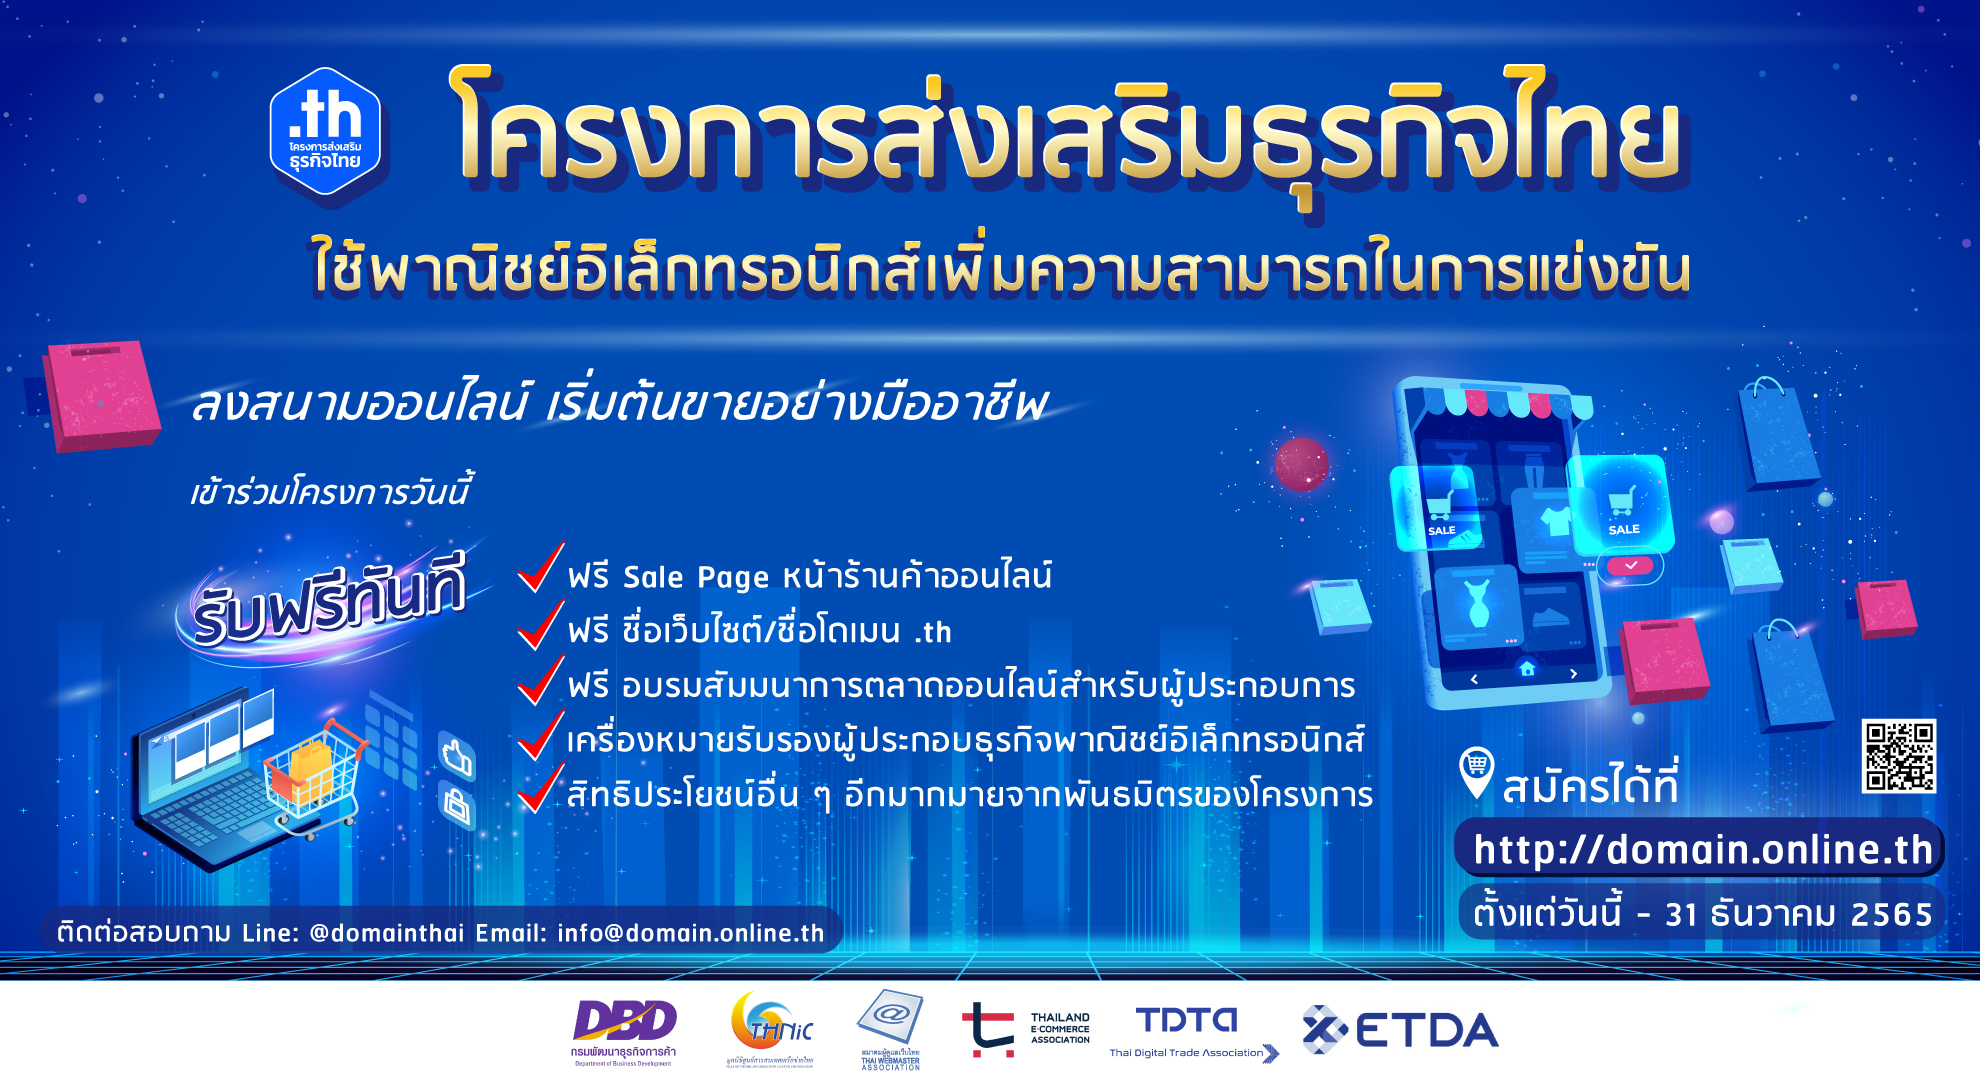 ทีเอชนิค ร่วมกับ กรมพัฒนาธุรกิจการค้า ETDA และองค์กรดิจิทัล สานต่อโครงการส่งเสริมธุรกิจไทยปี 2 สนับส